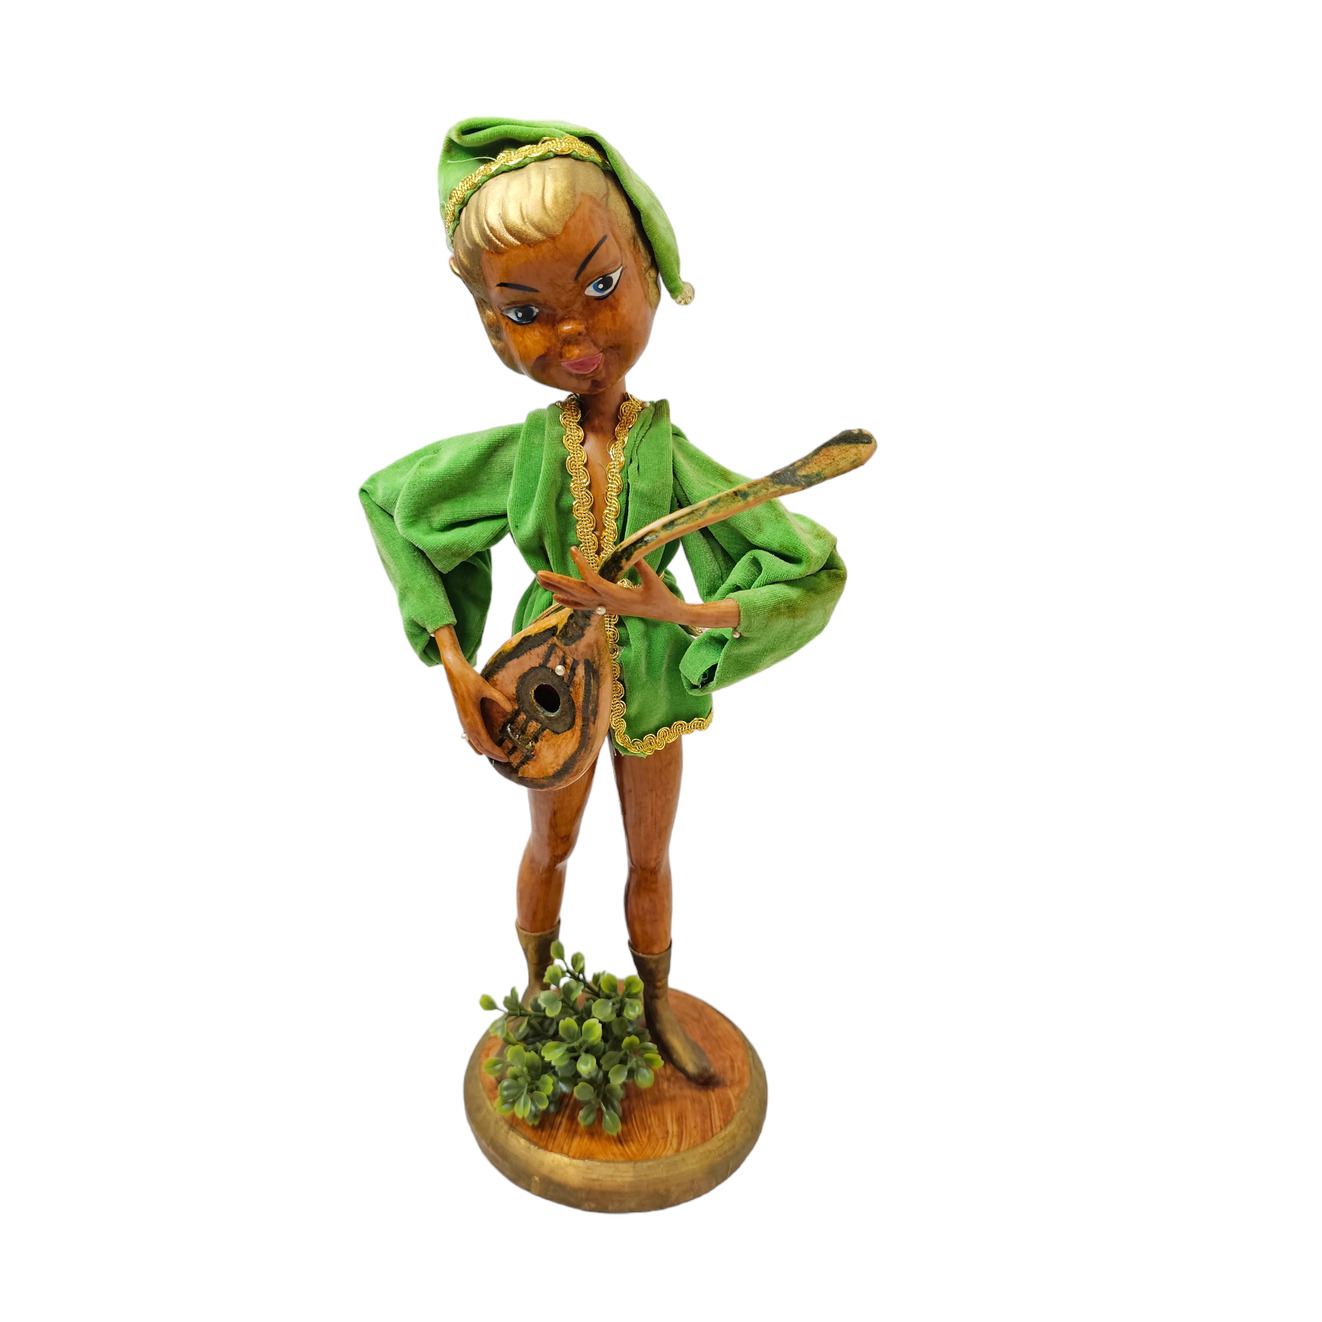 Pixie Elf Musician Guitar Lute 17 Inch Green Velvet Vintage Hong Kong Plastic